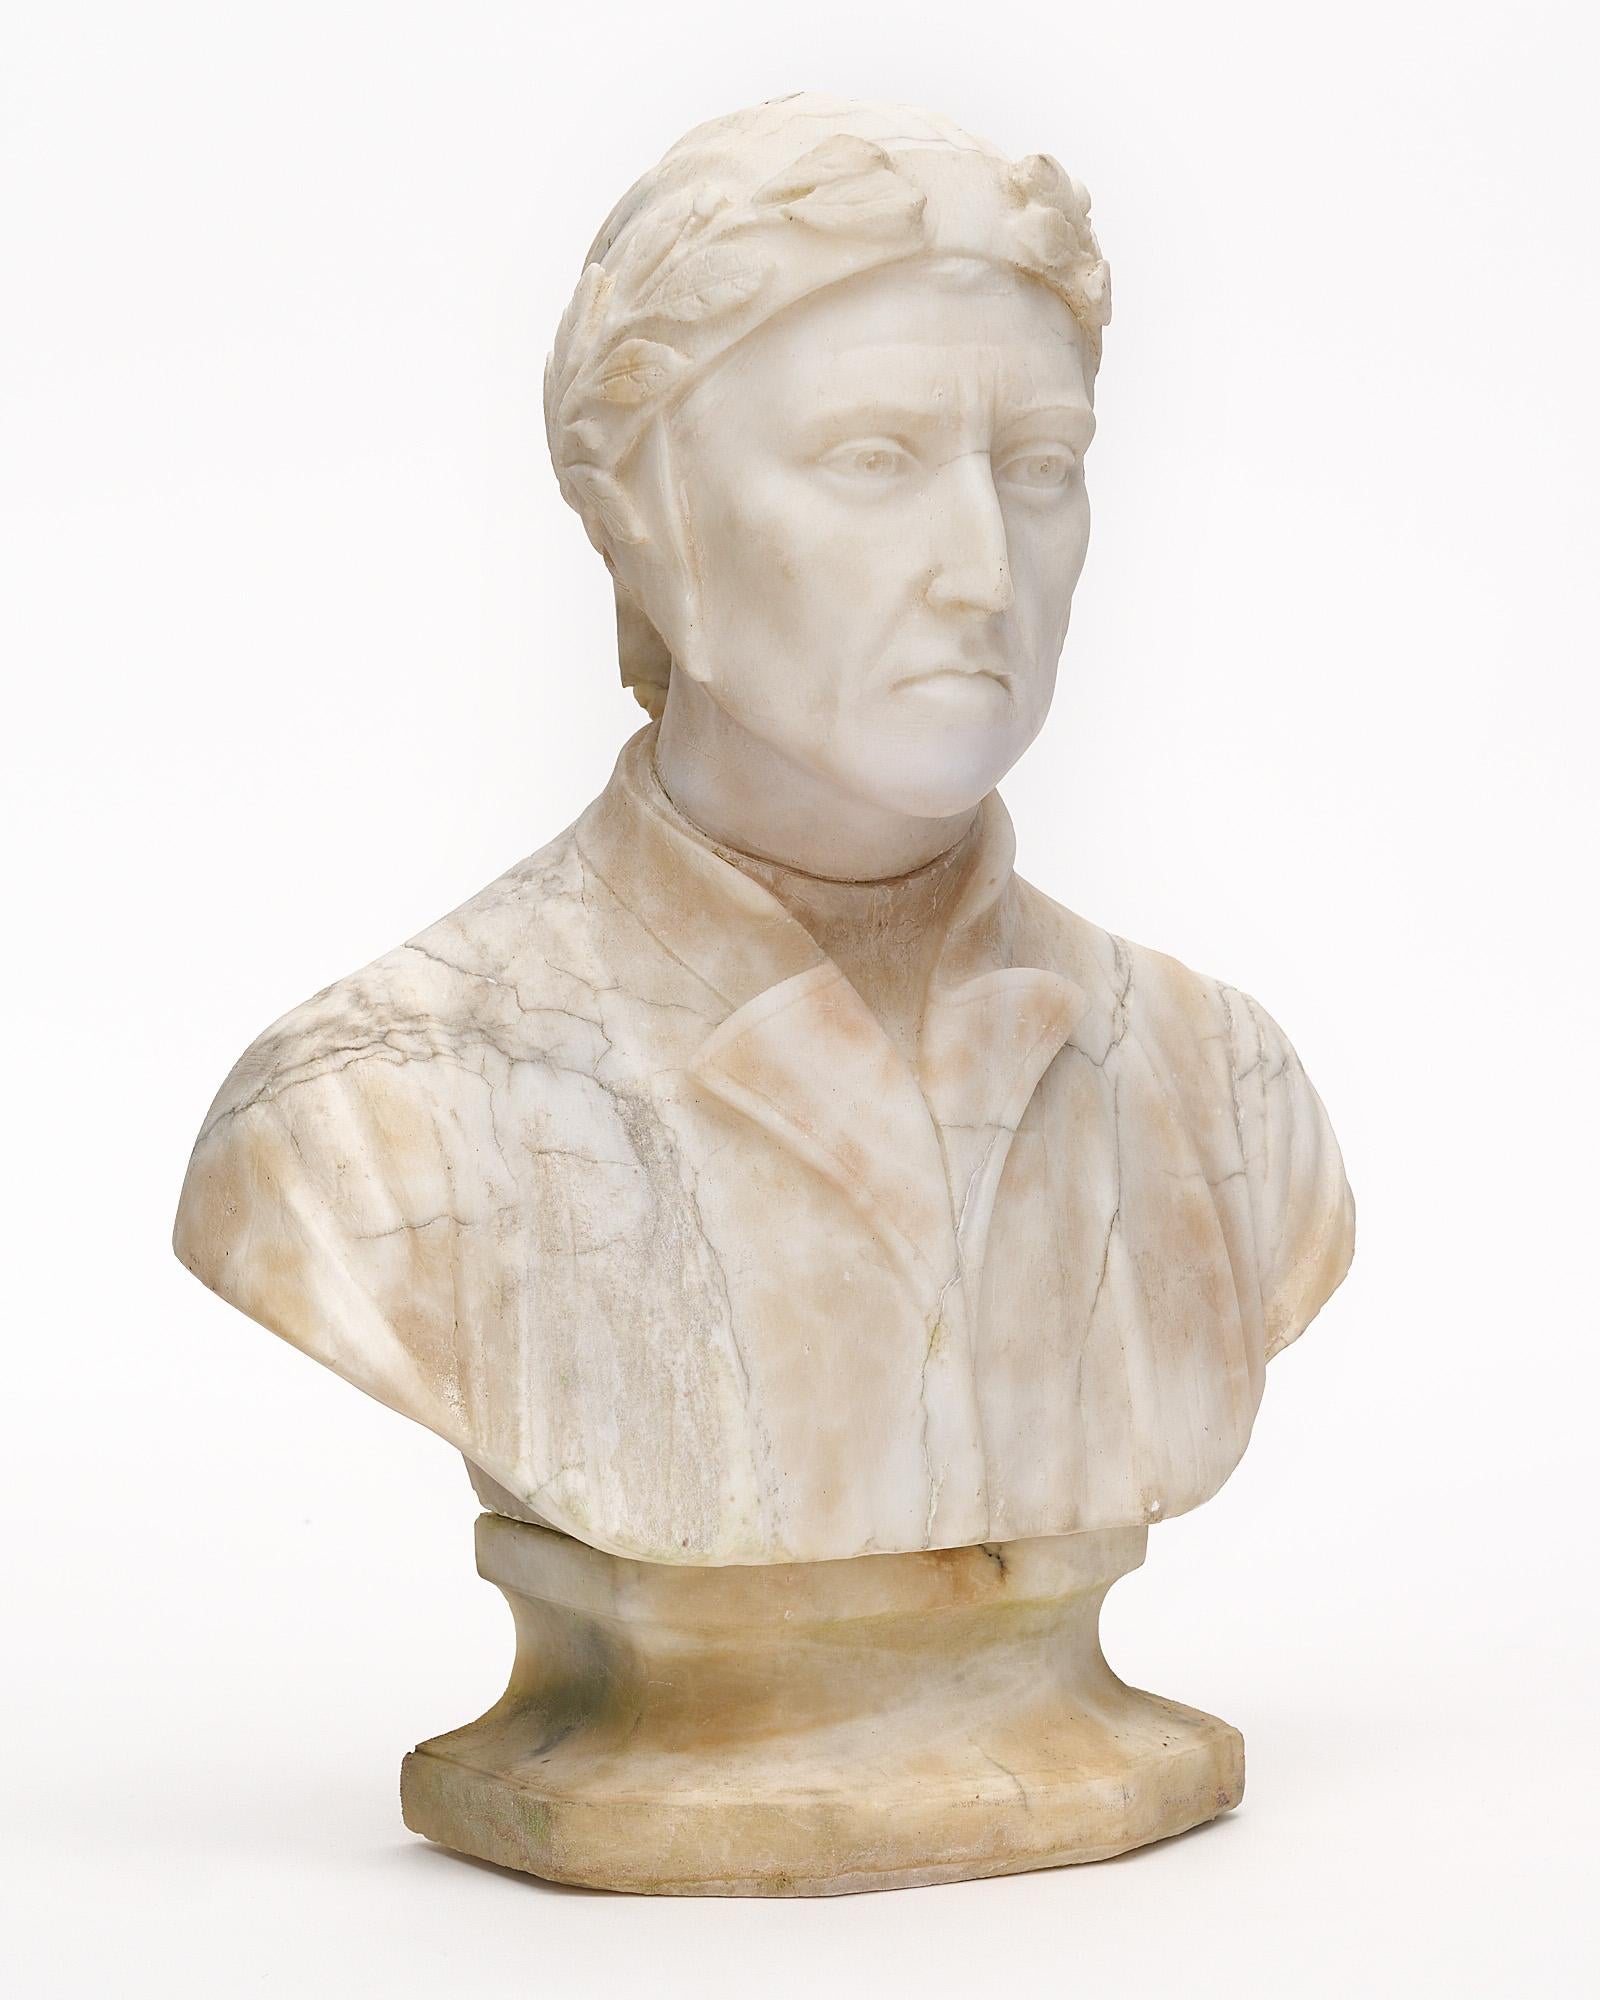 Büste von Dante Alighieri aus Frankreich, hergestellt aus Carrara-Marmor. Diese handgeschnitzte Skulptur stellt einen lebensechten Dante dar, den berühmten florentinischen Schriftsteller, der oft als Vater der italienischen Sprache bezeichnet wird.